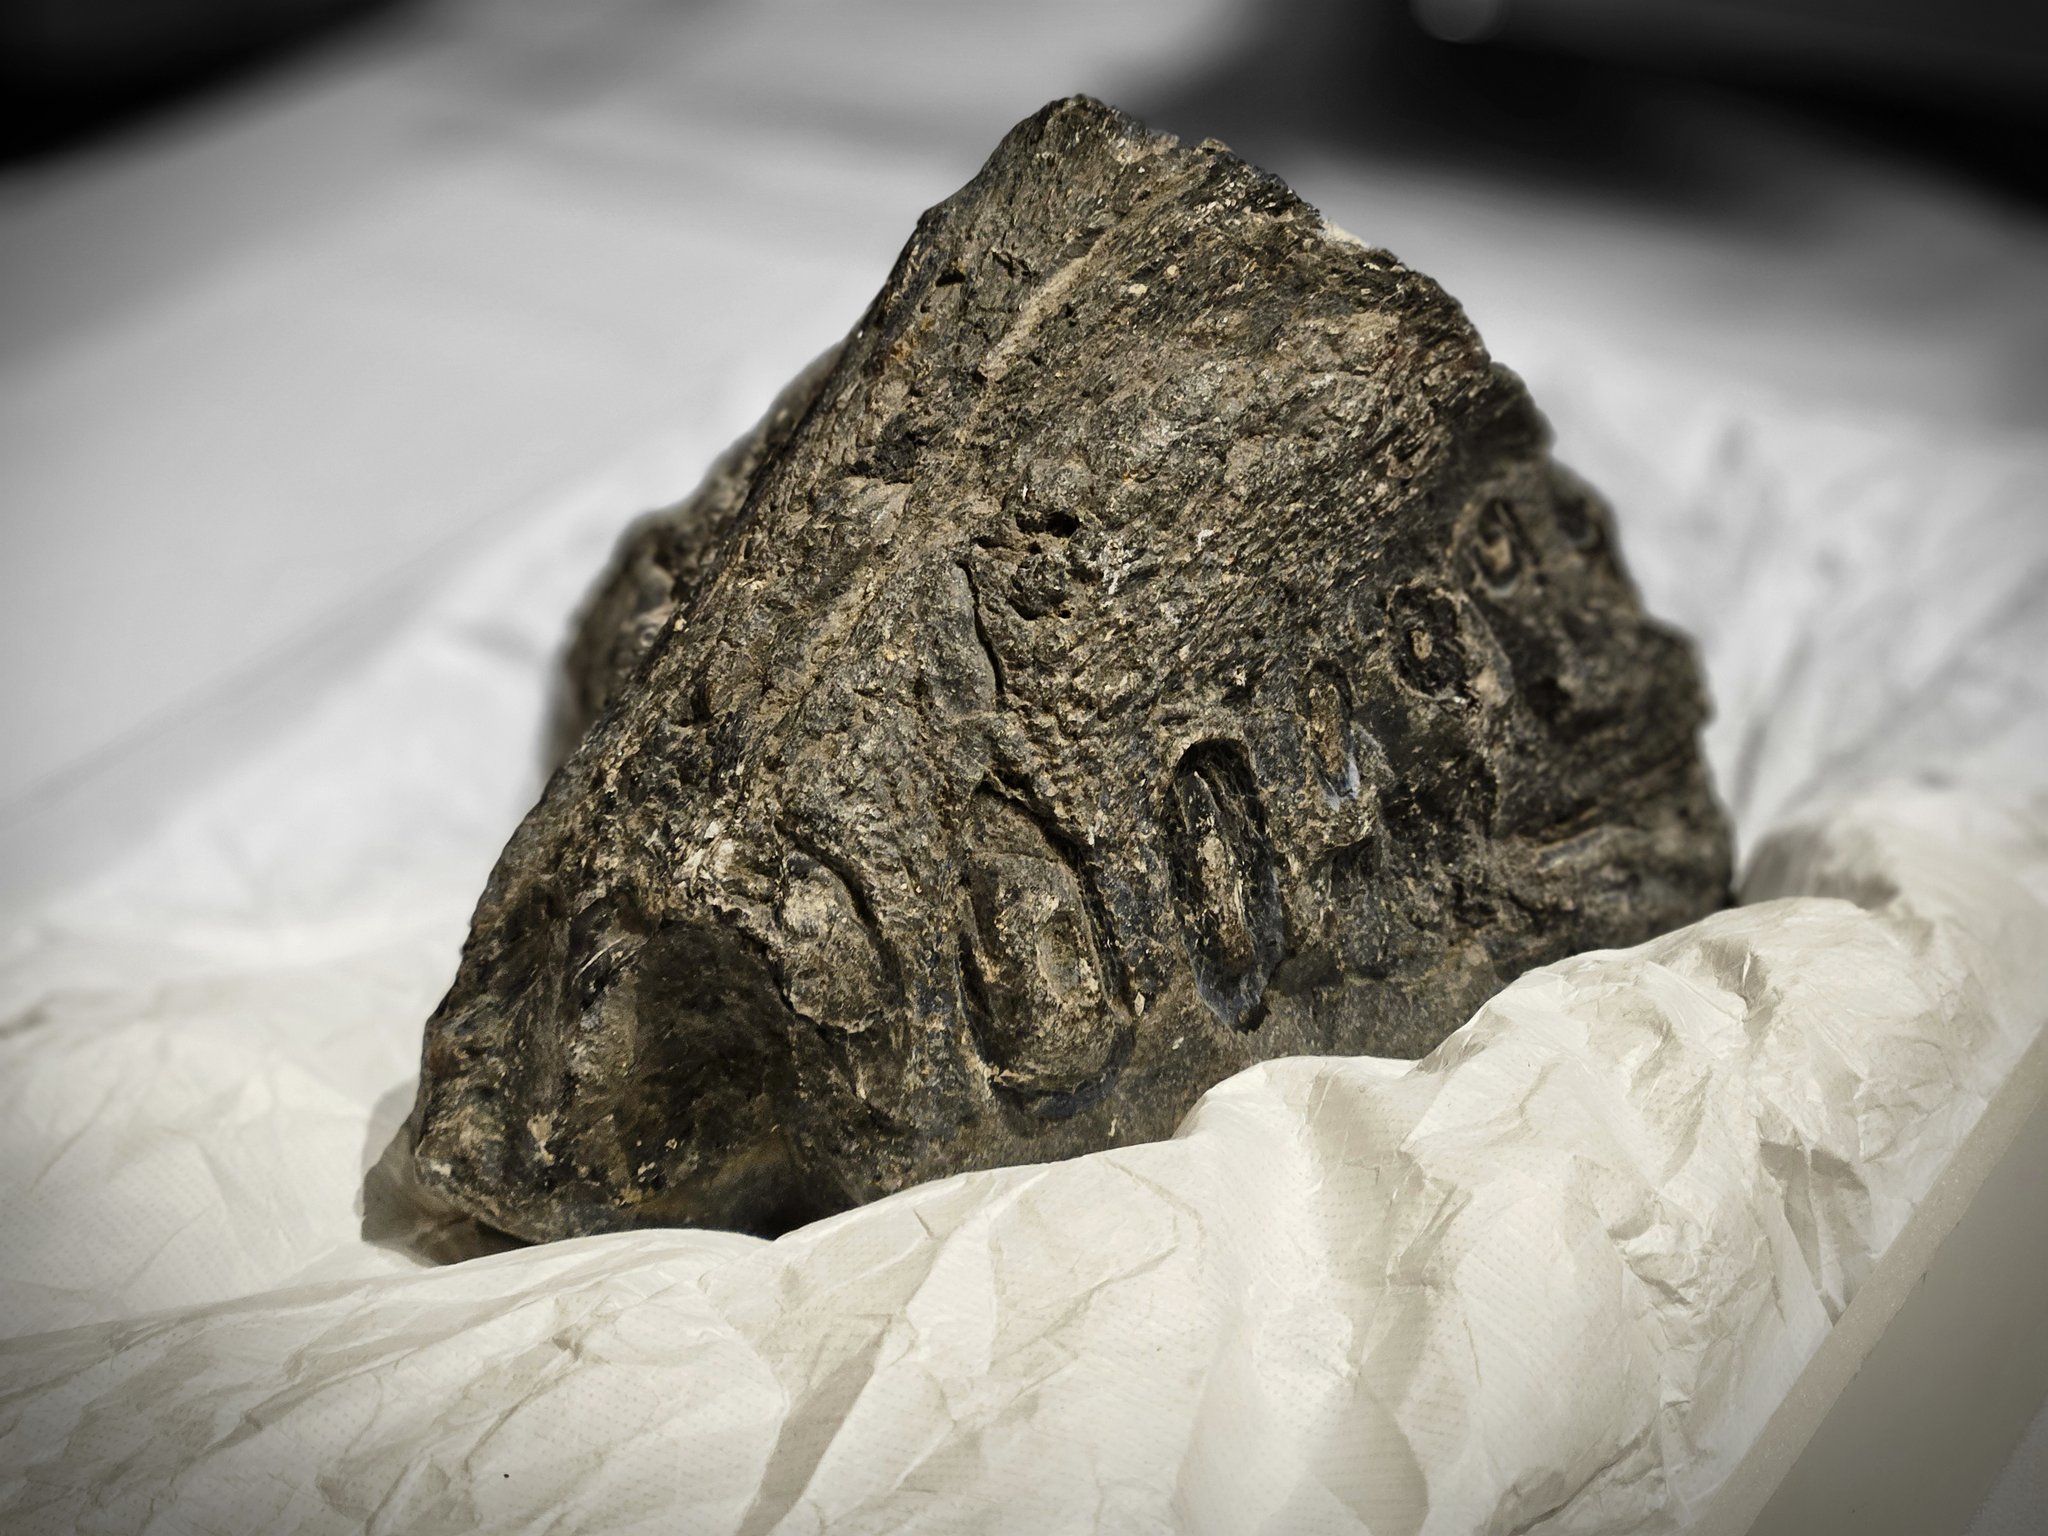 Descubren fósil de elasmosaurio en Tarapacá: Tendría más de 70 millones de años